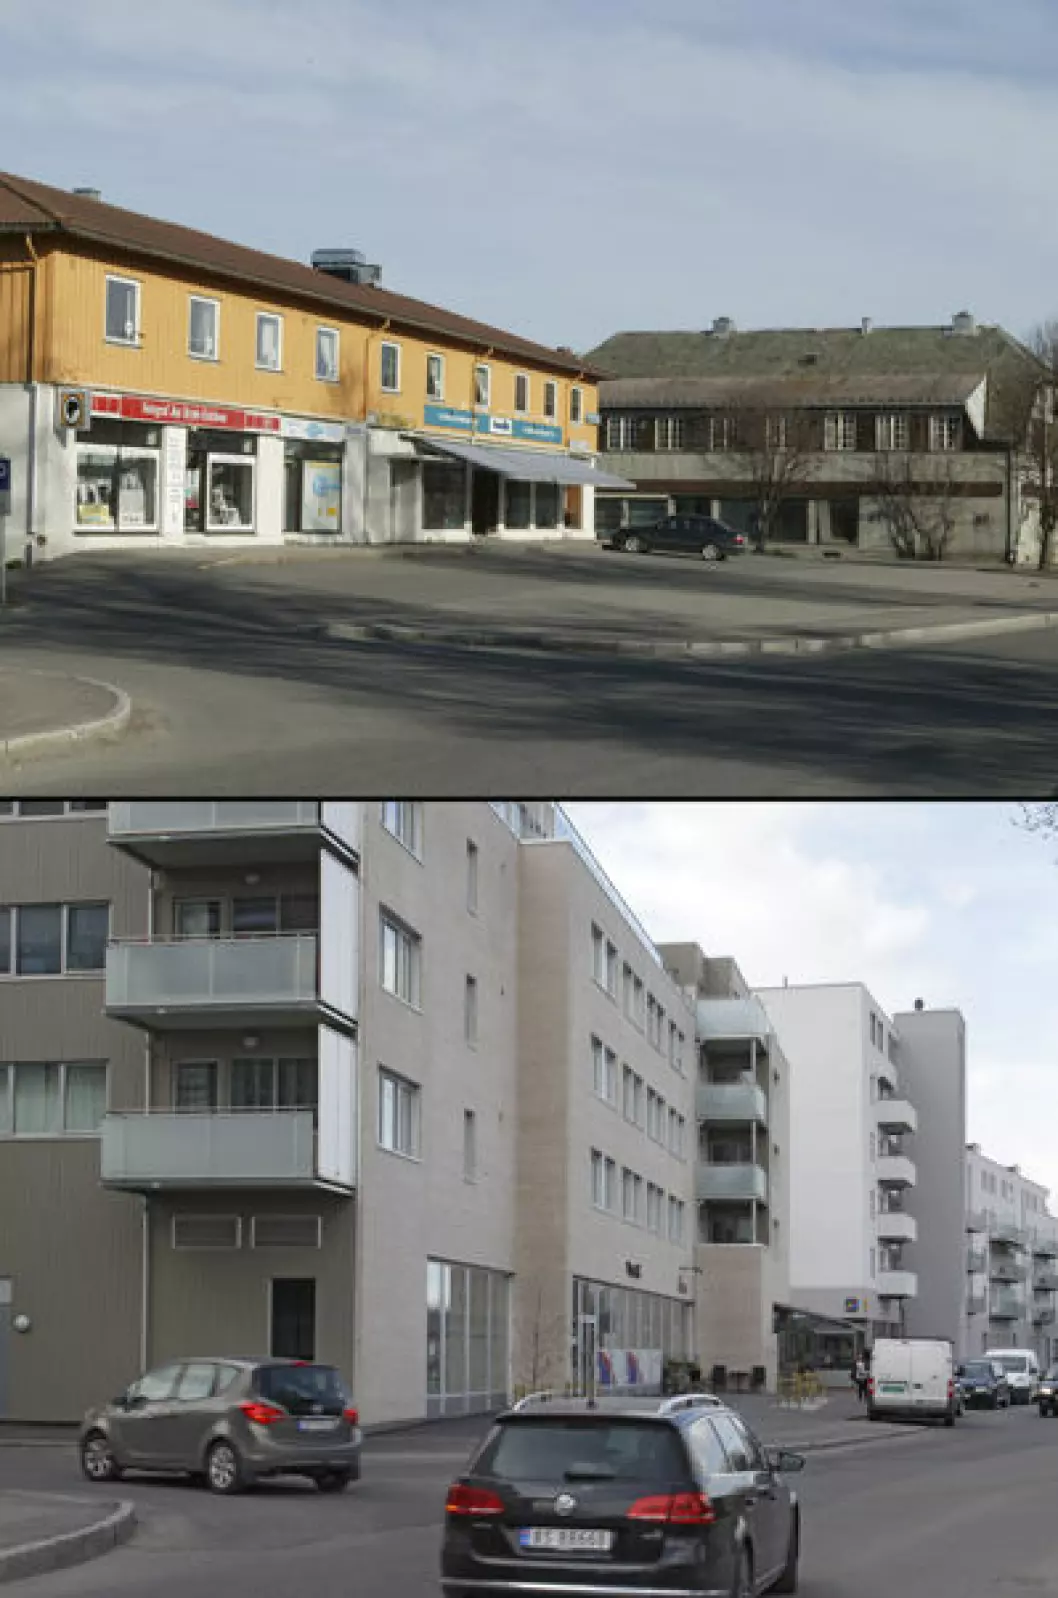 2006 og 2016: Brekkeveien i Ås sentrum, Akershus. Begge foto: Oscar Puschmann